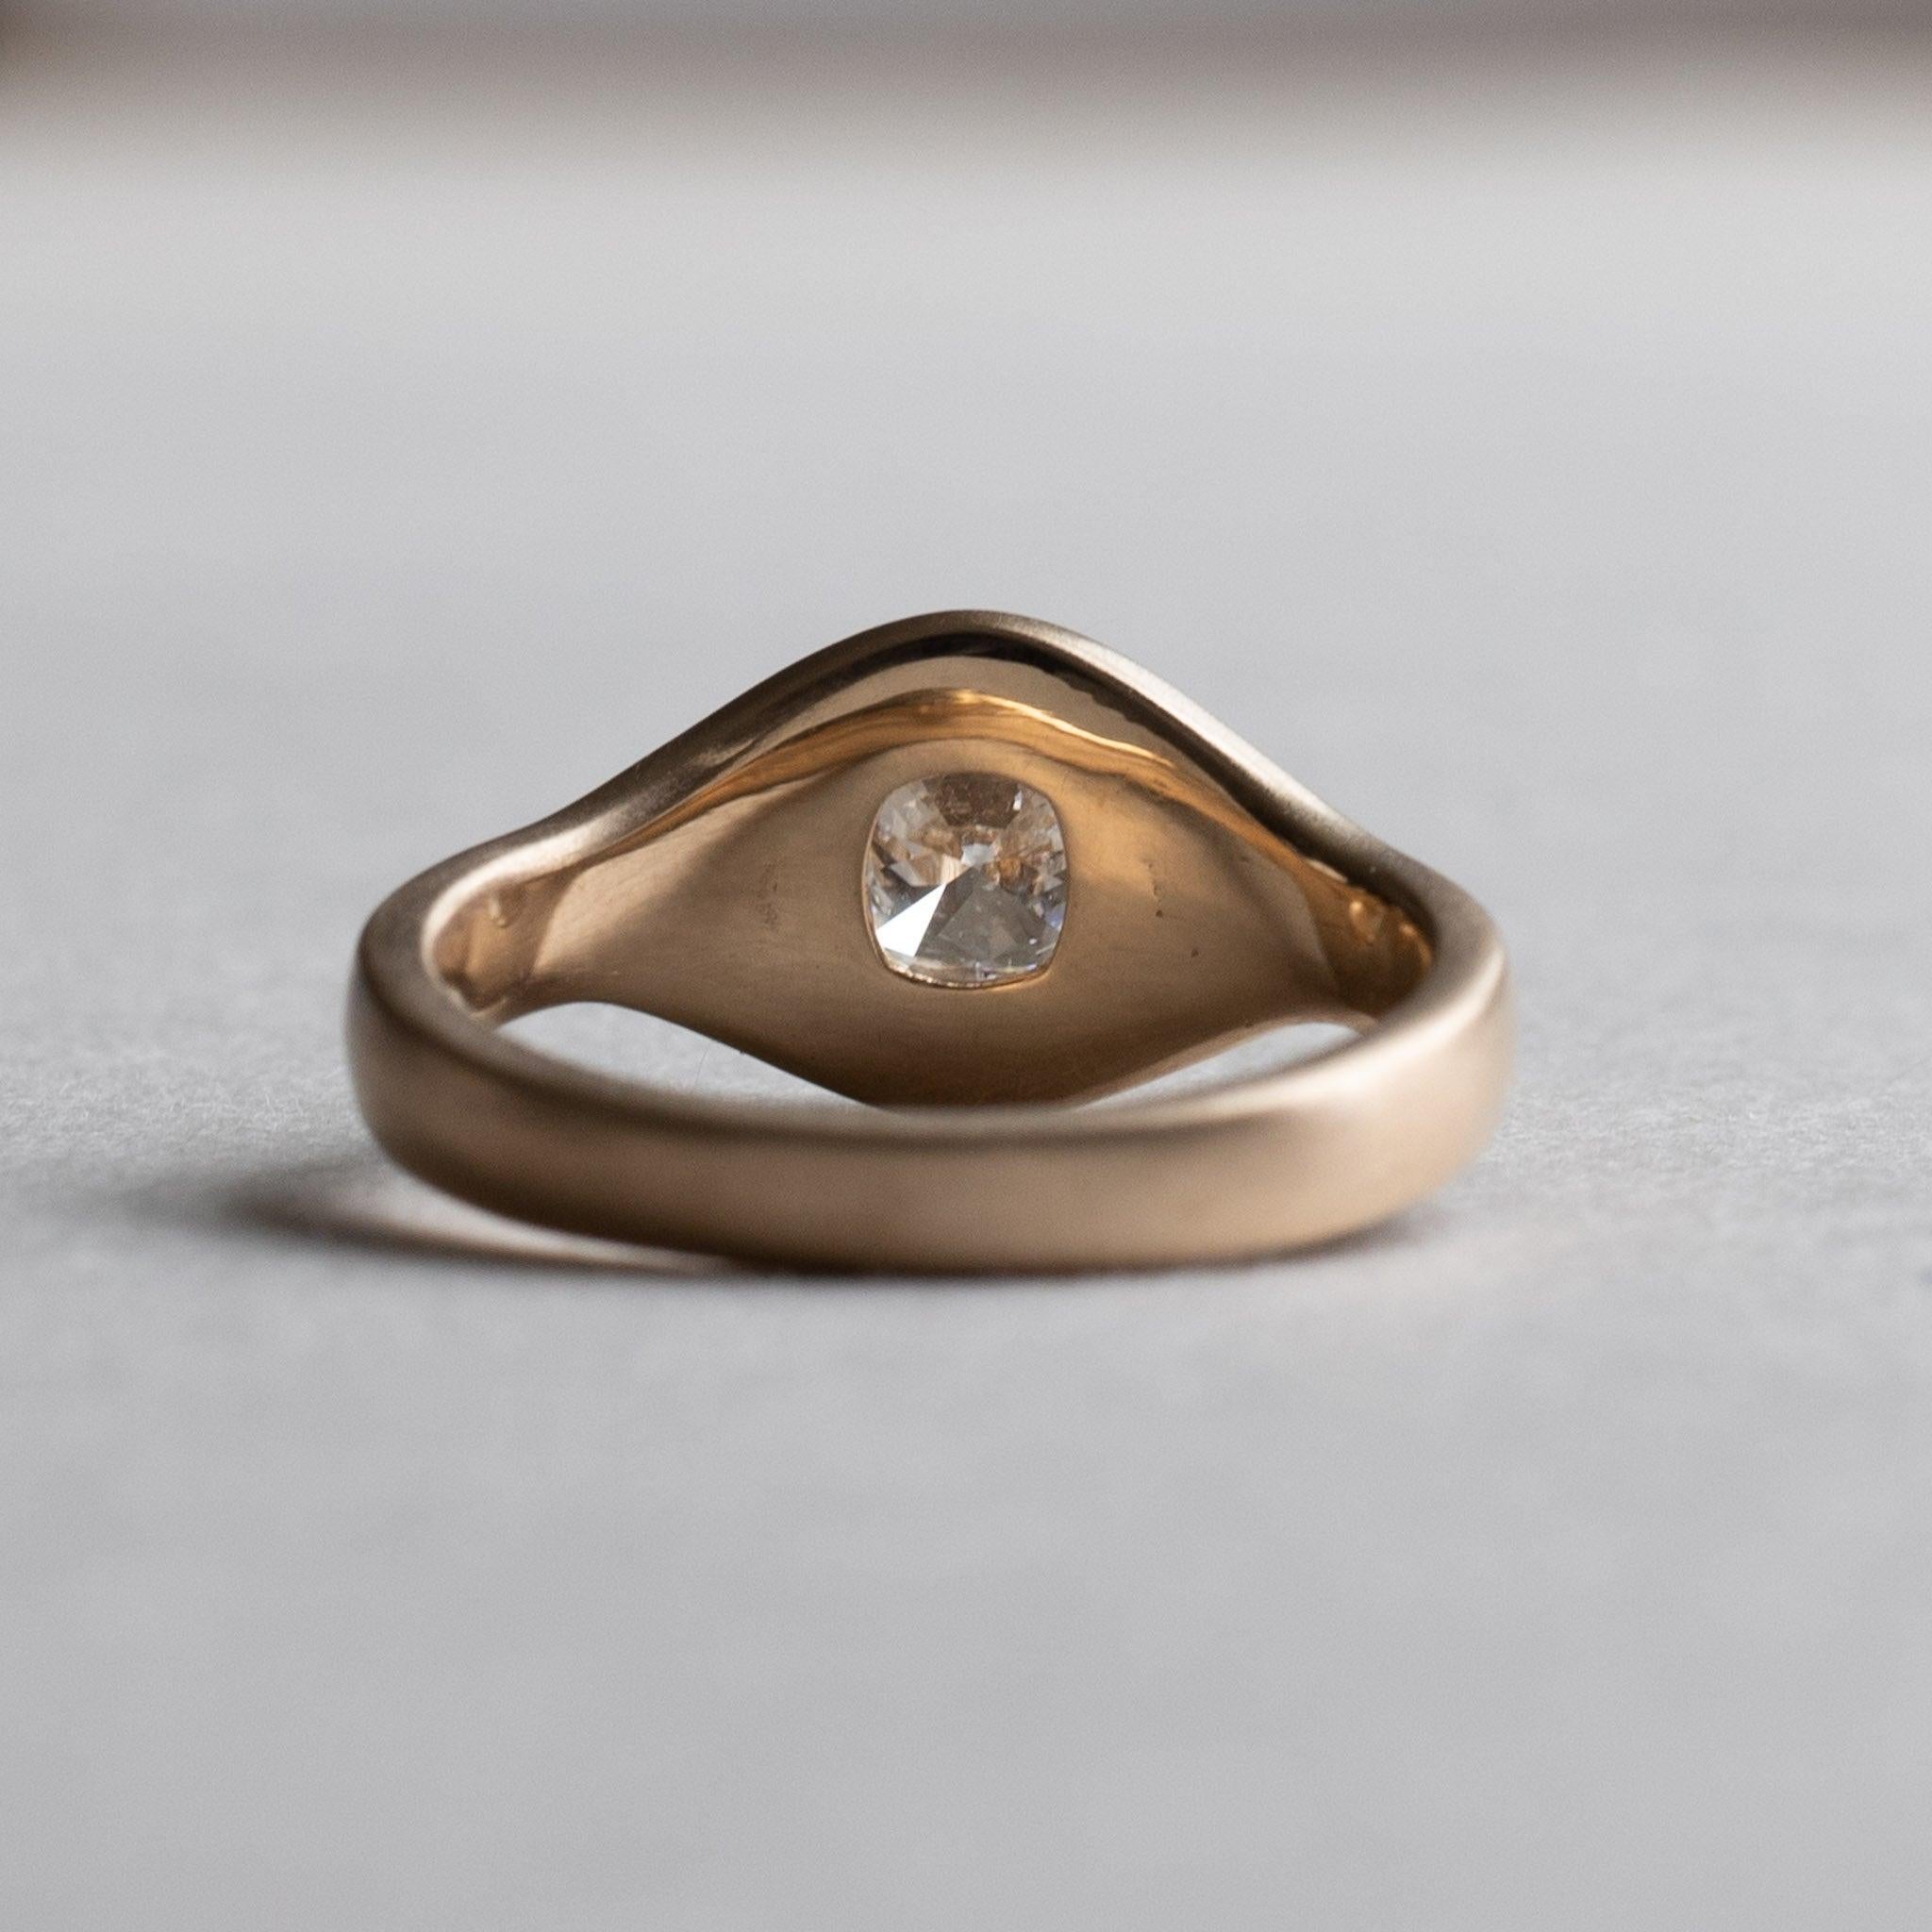 For Sale:  18 Karat Gold Diamond Signet Ring, GIA Certified 1 Carat Diamond Cocktail Ring 8